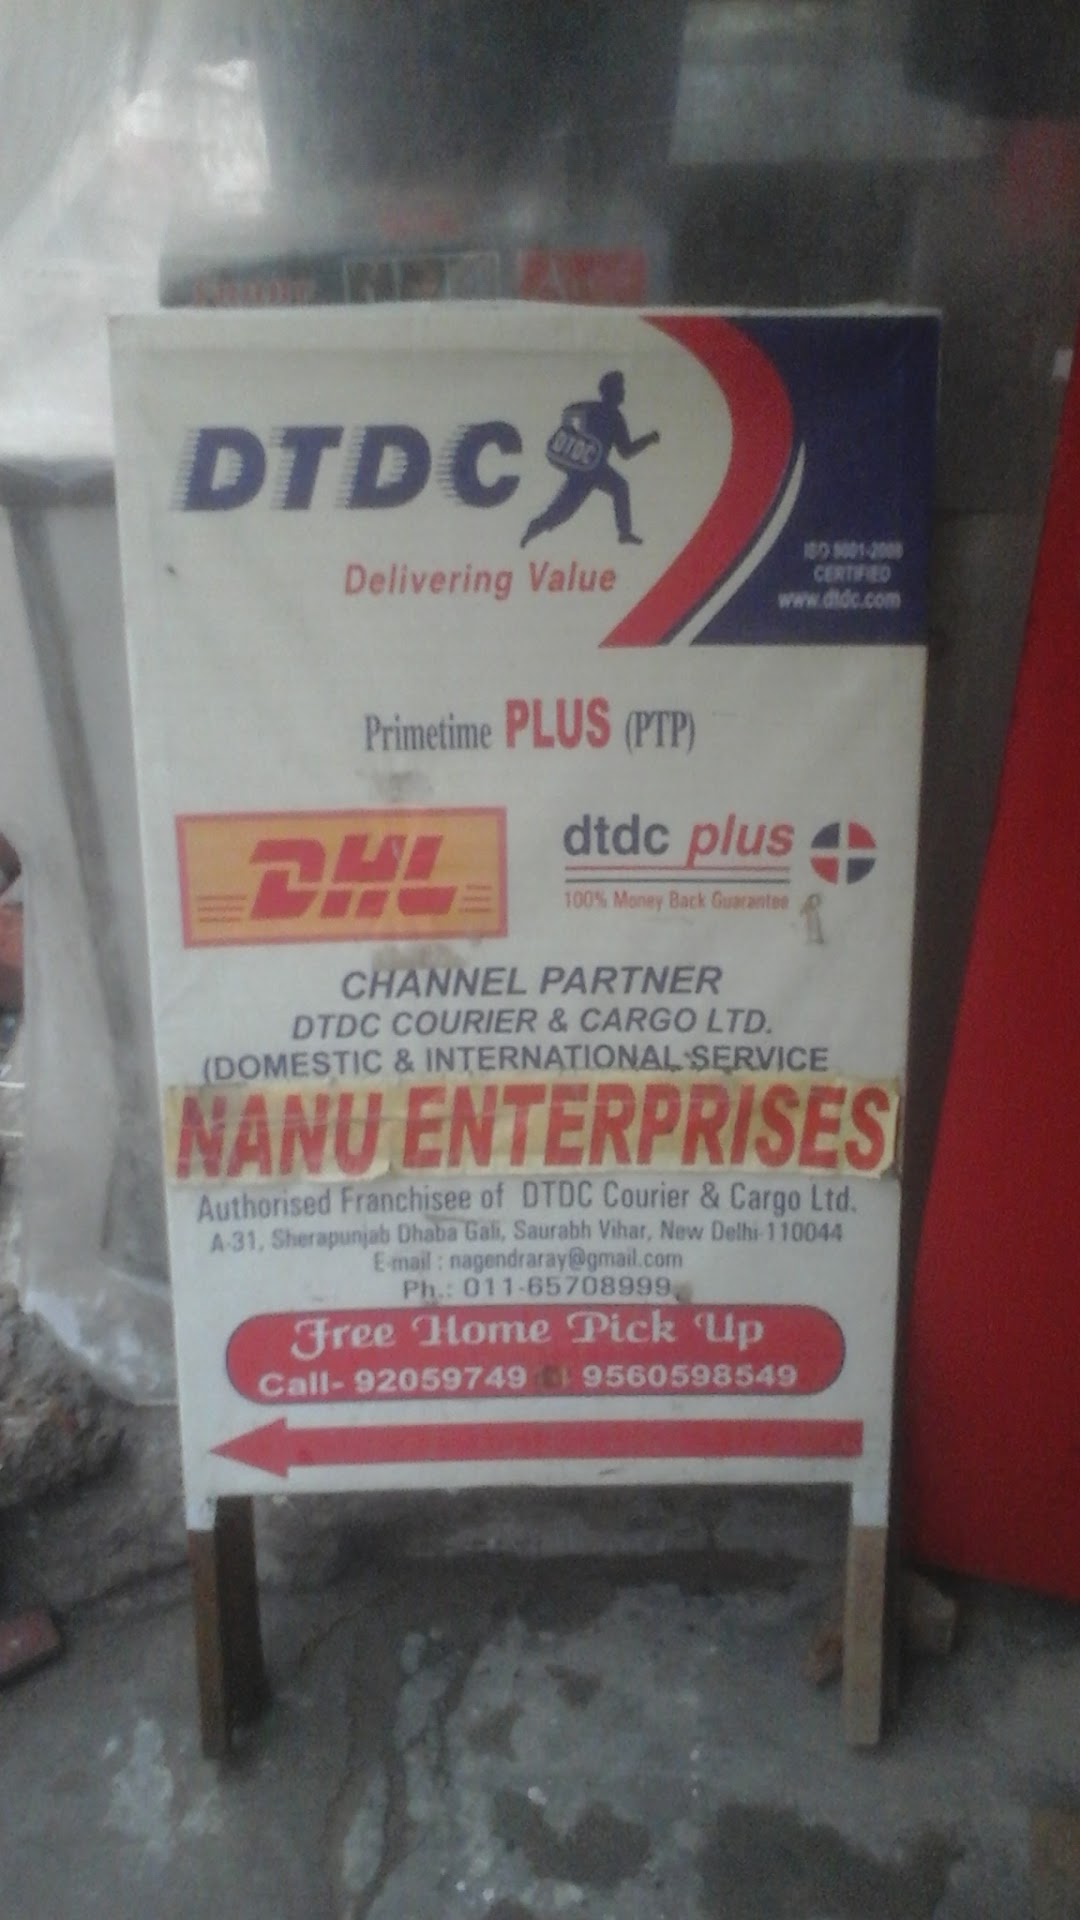 Nanu Enterprises